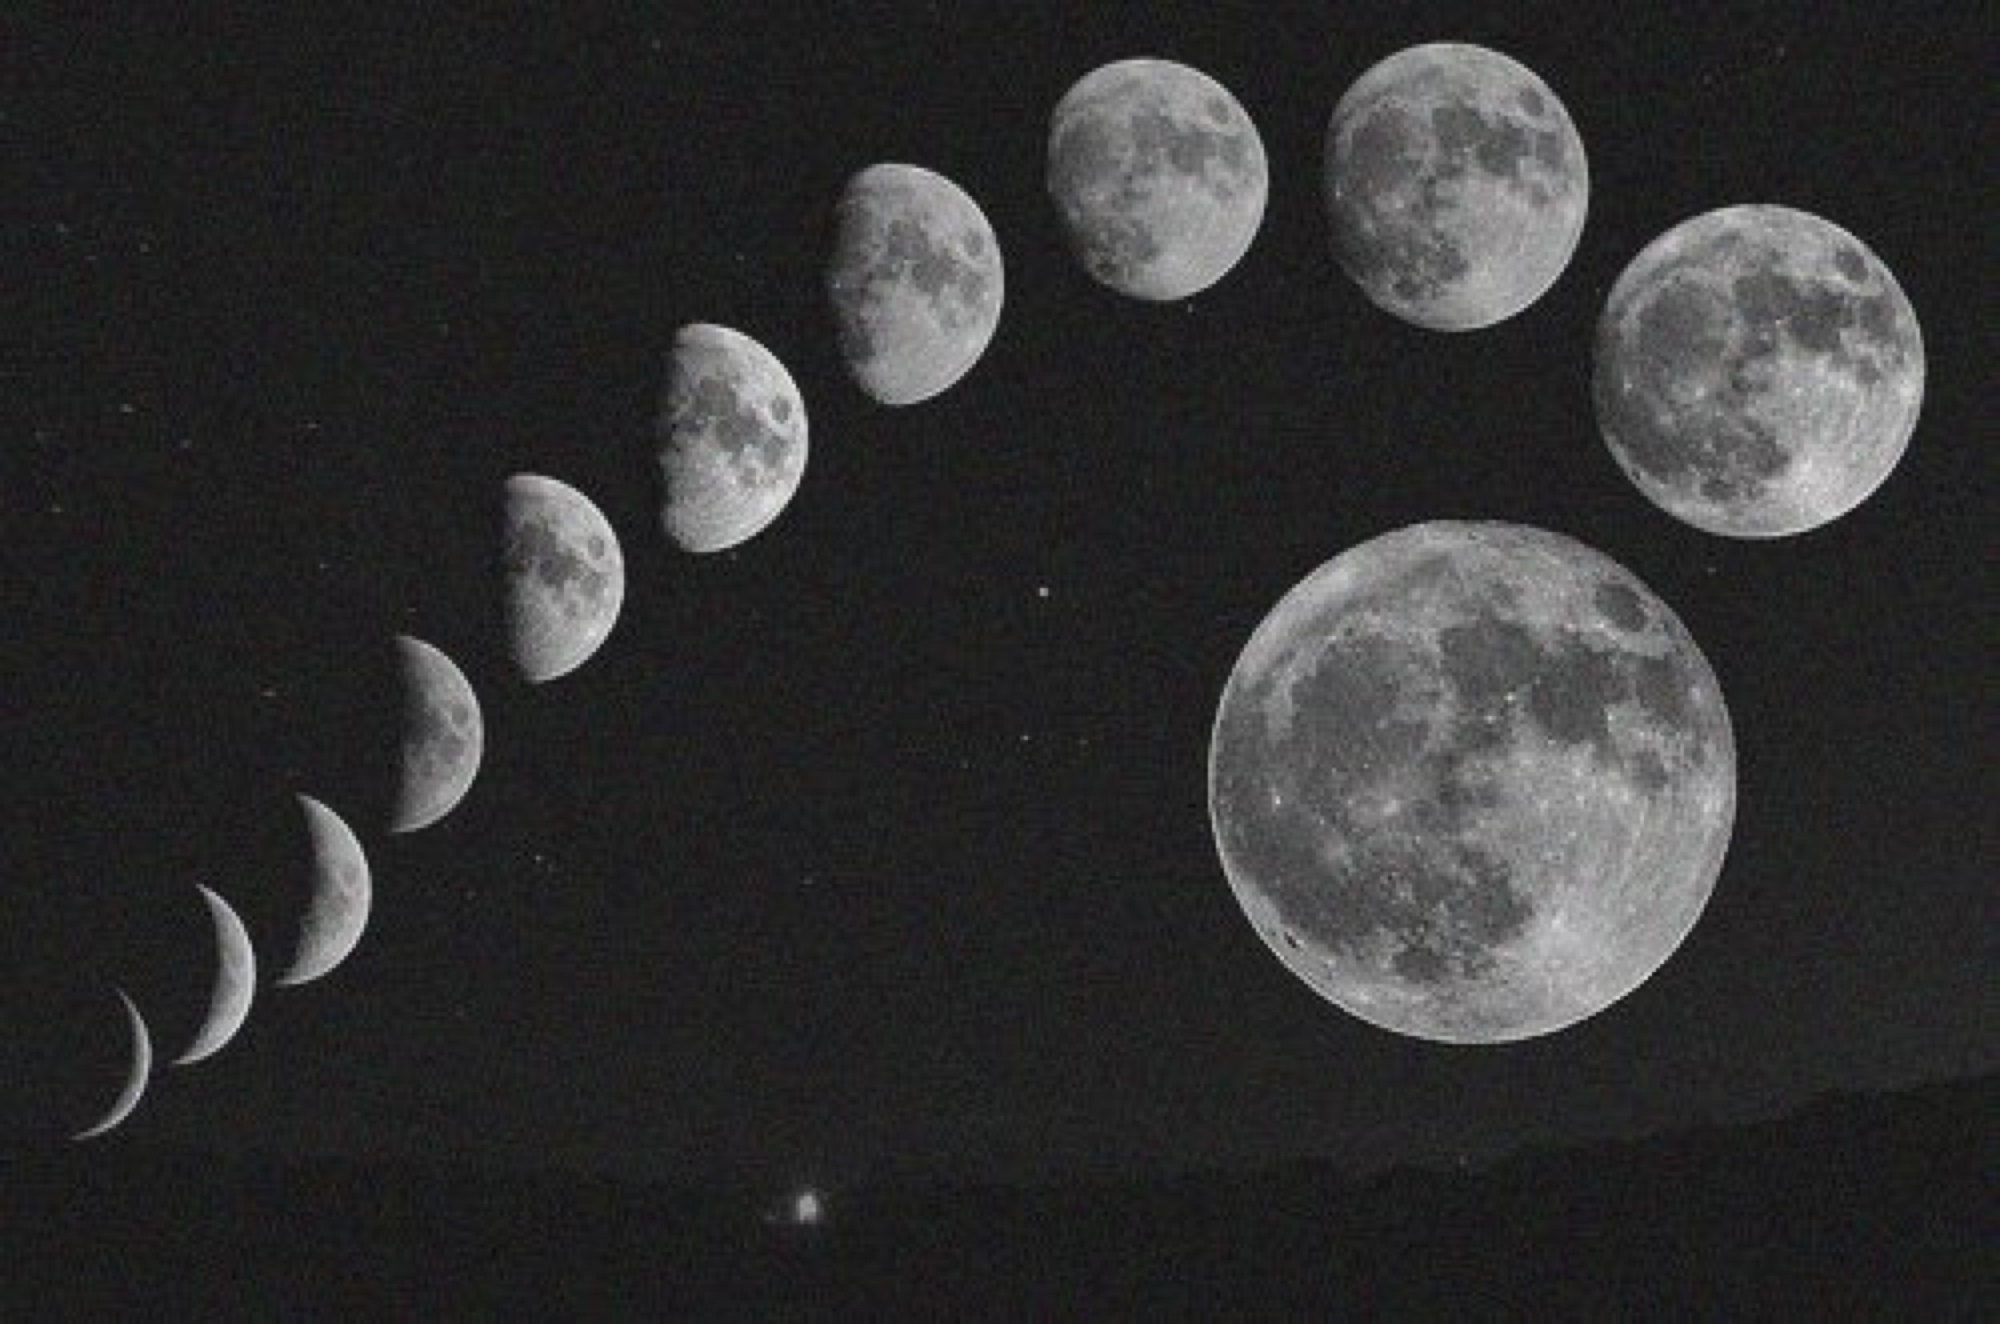 Луна на убыль пошла. Фаза Луны 15.03.2001. 2-Я фаза Луны. Лунная фаза Пауша. Вид с Луны.